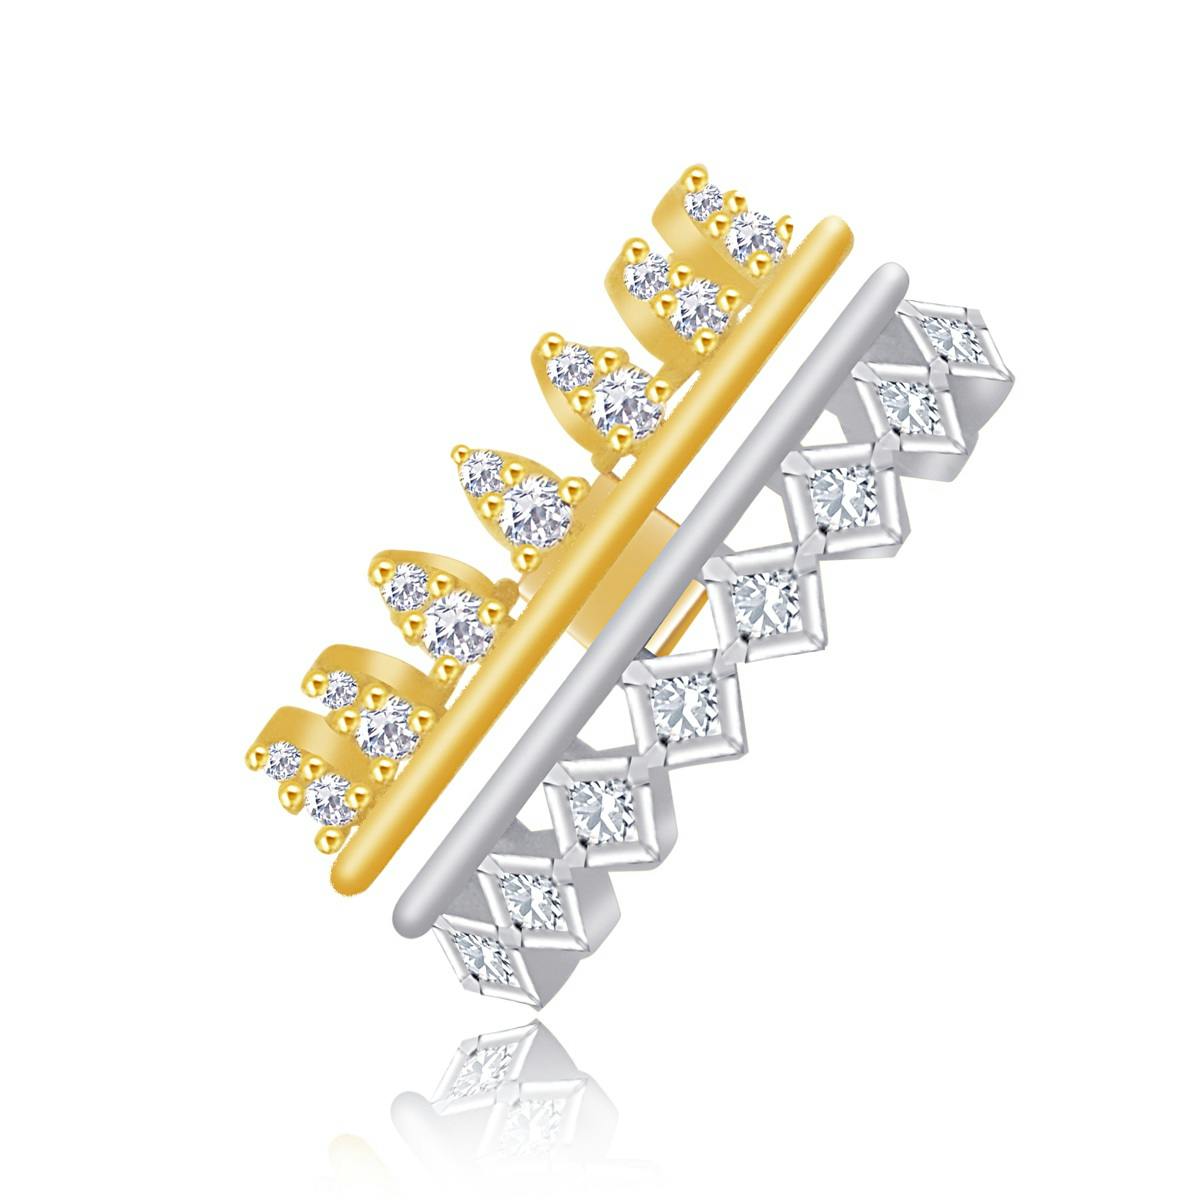 Atara diamond ring